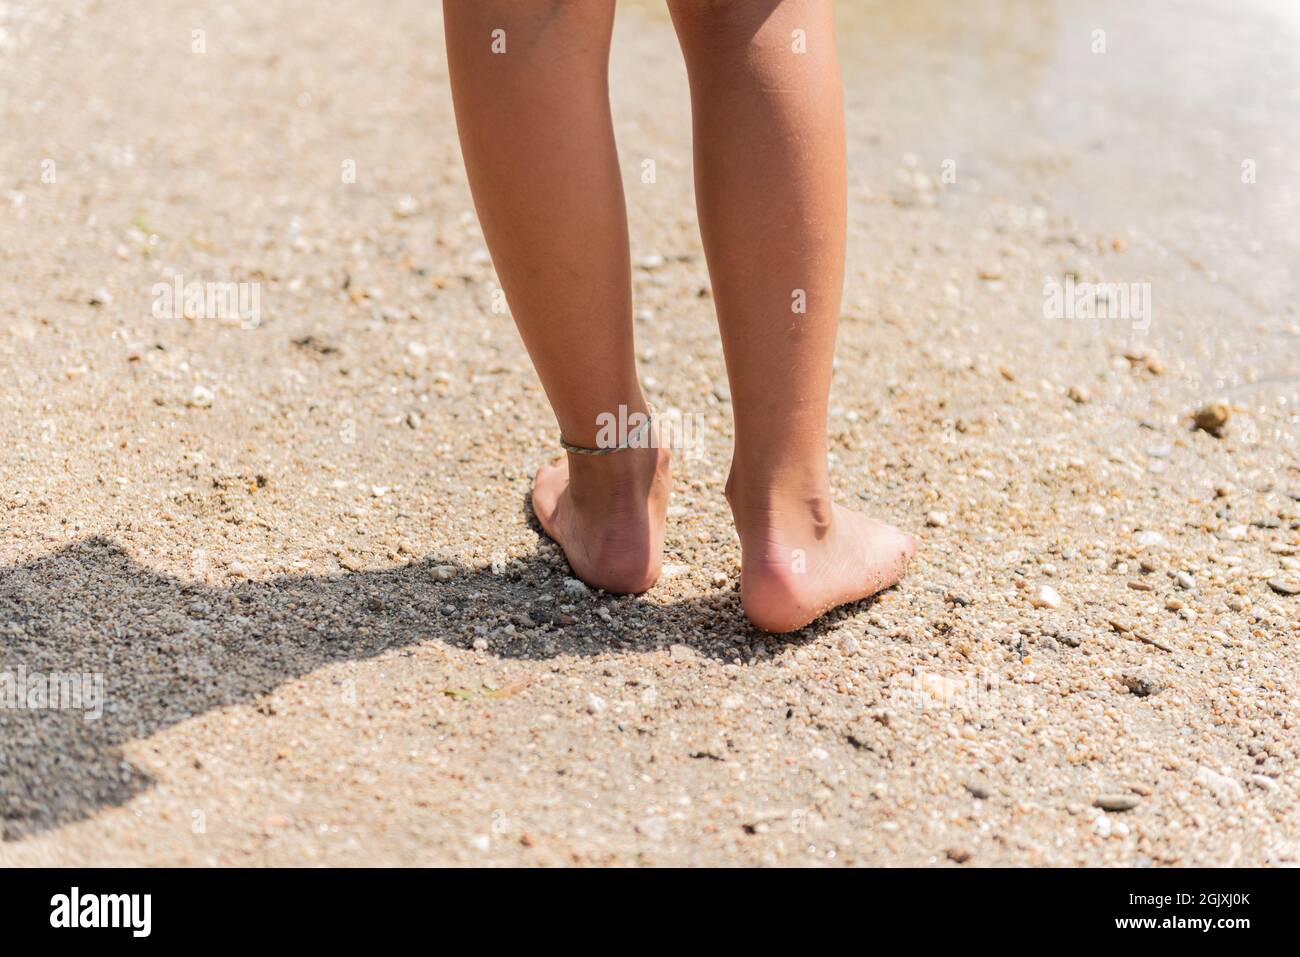 Rückansicht der Füße und Beine beim Spazierengehen am Flussstrand. Stockfoto